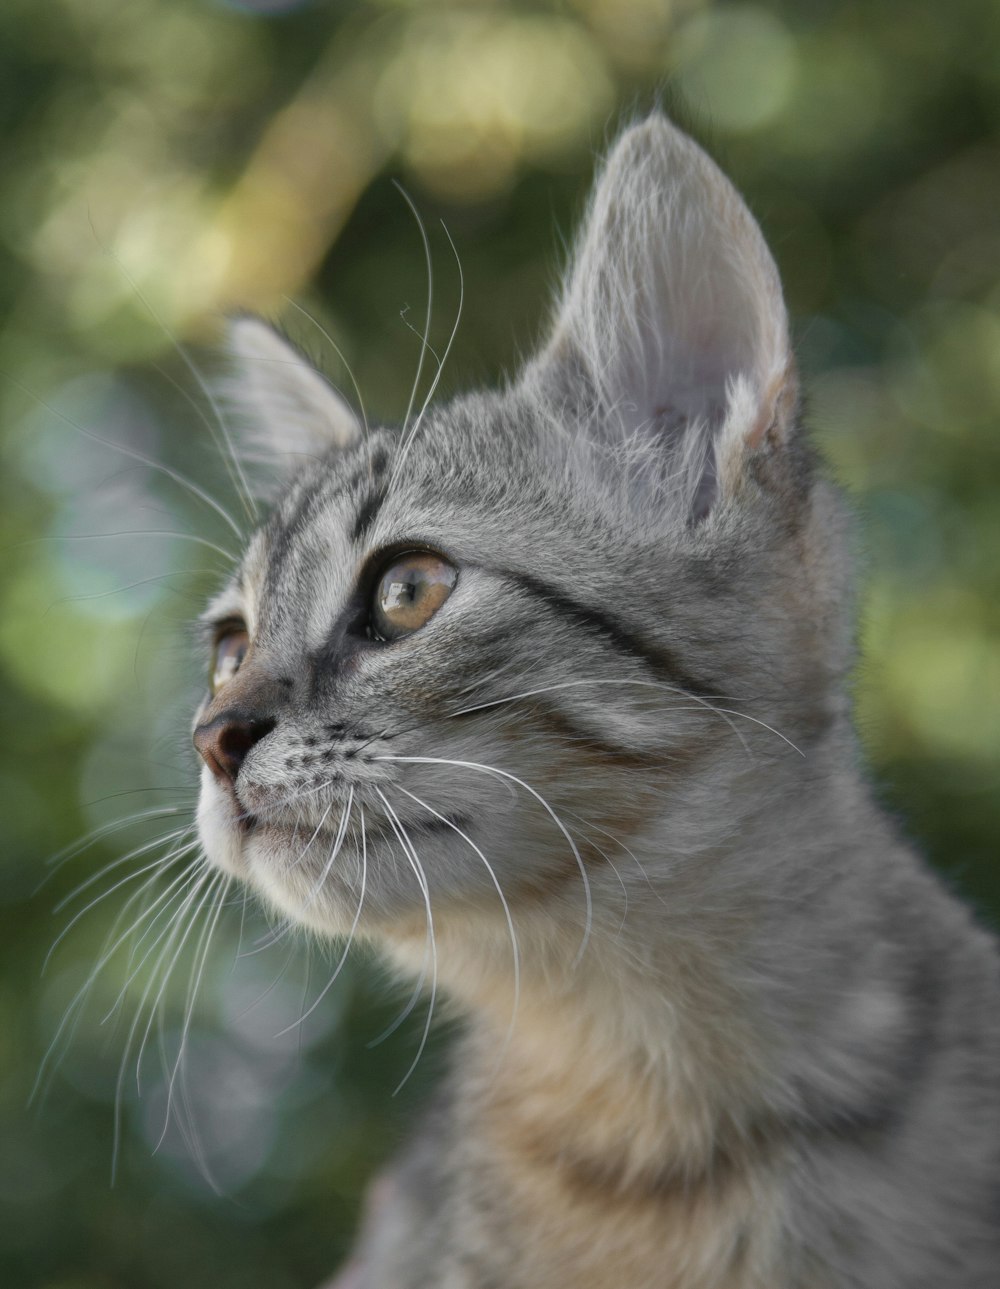 silver tabby cat in tilt shift lens